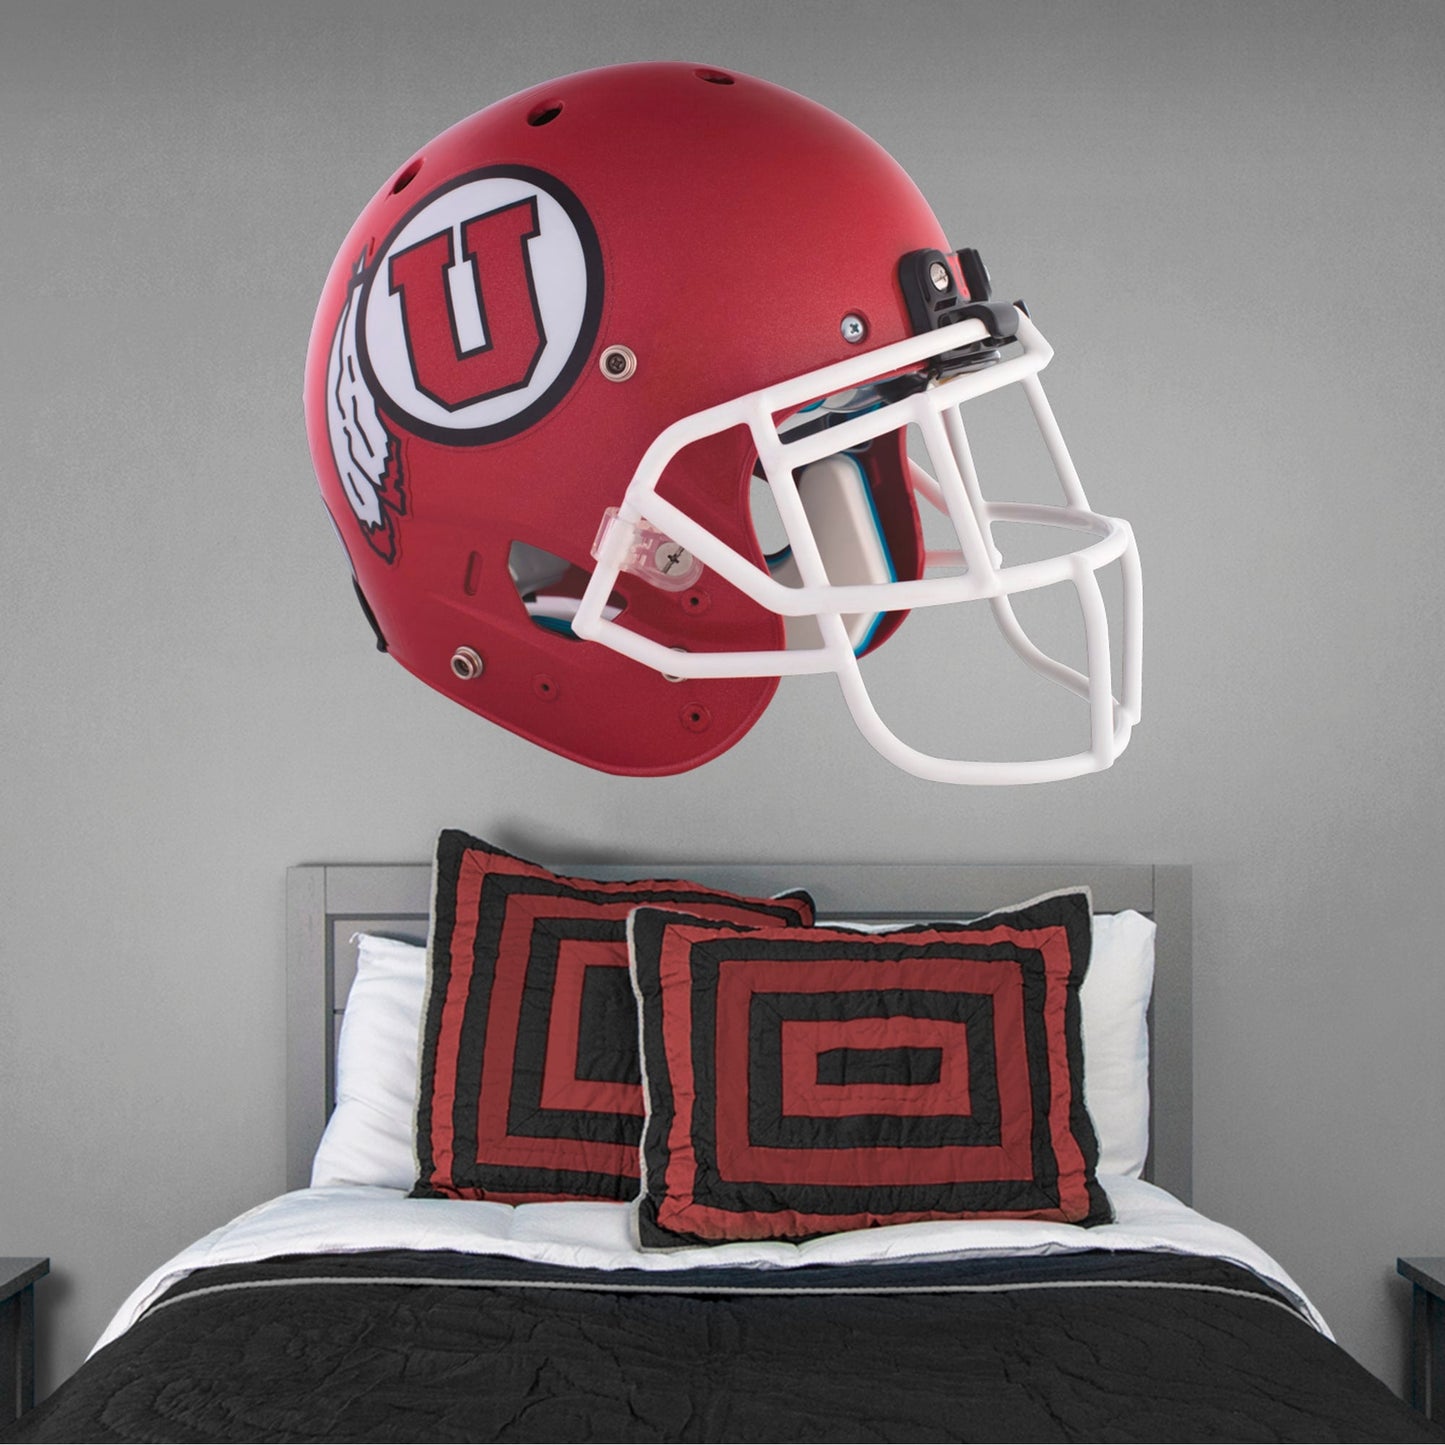 U of Utah: Utah Utes Red Helmet        - Officially Licensed NCAA Removable     Adhesive Decal